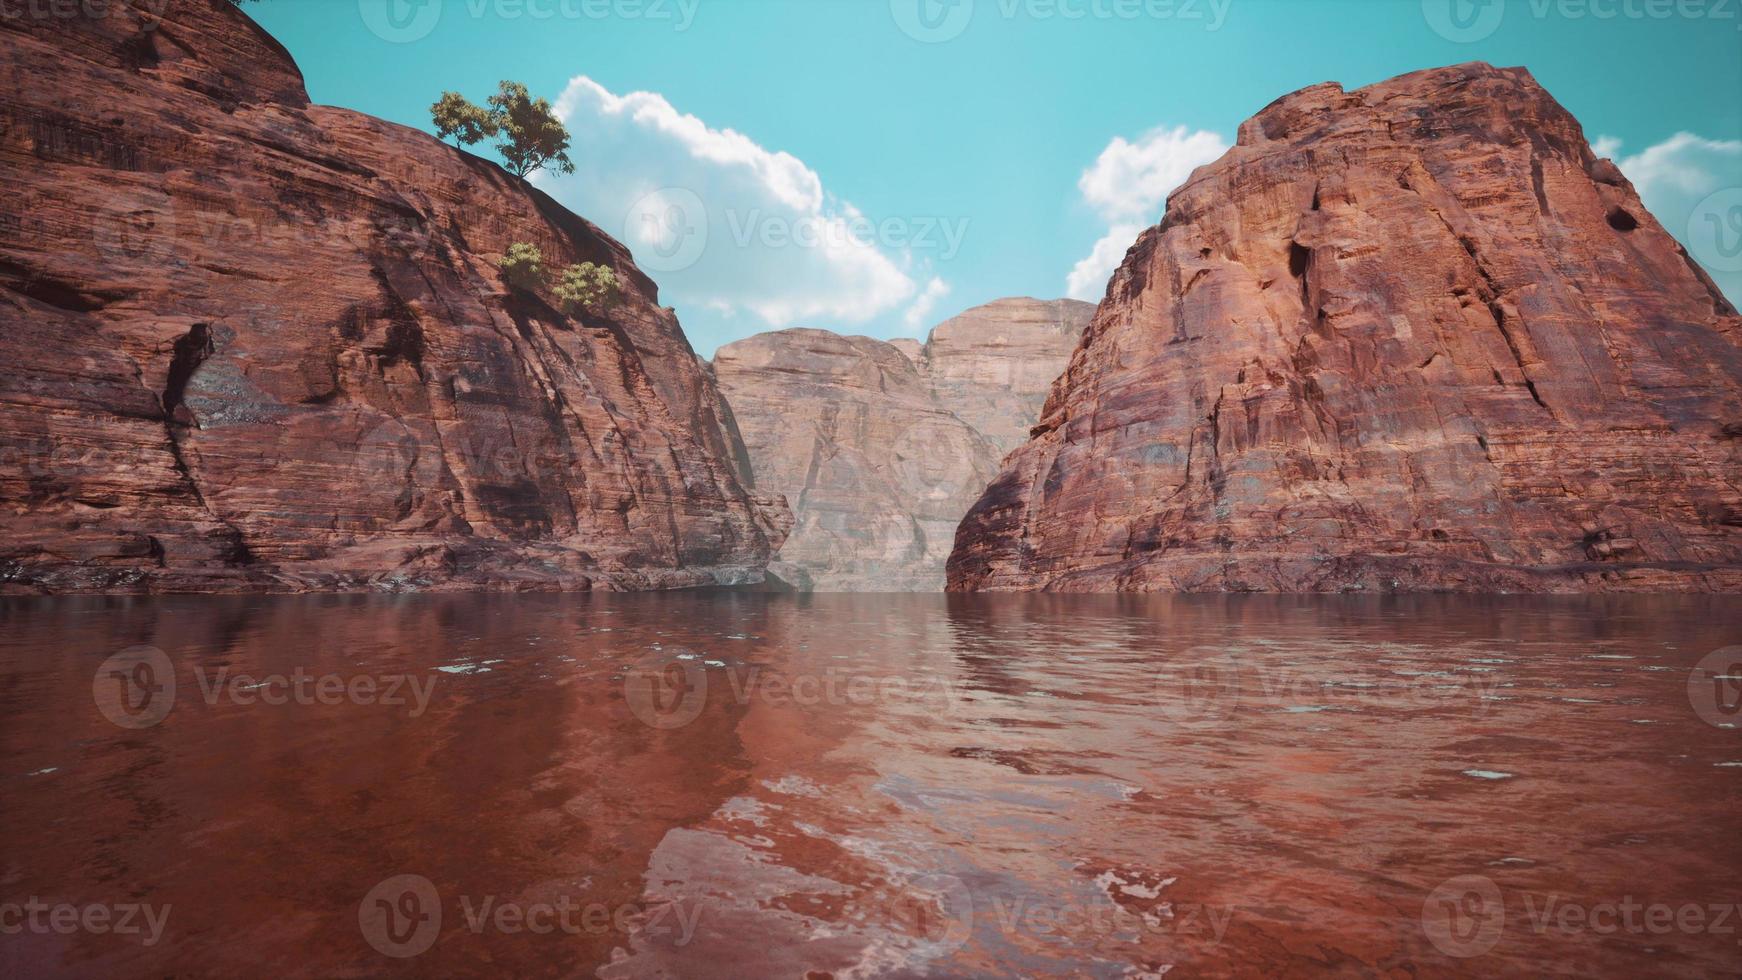 Colorado rivier met prachtige zandstenen muren en canyons foto